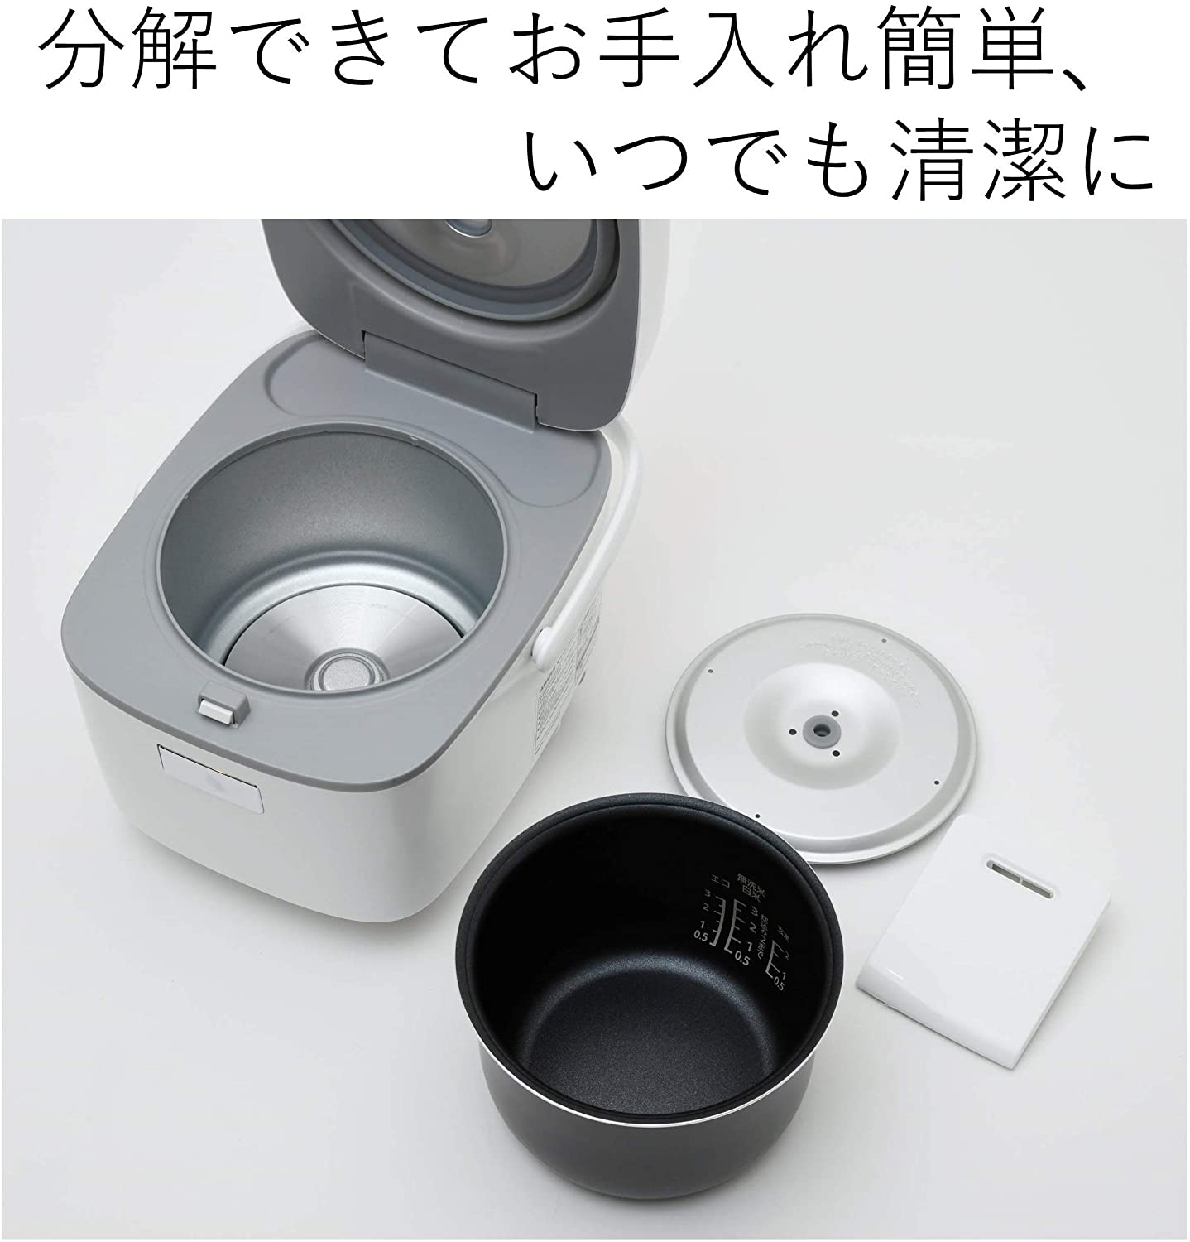 山善(YAMAZEN) マイコン炊飯ジャー YJC-300の商品画像6 